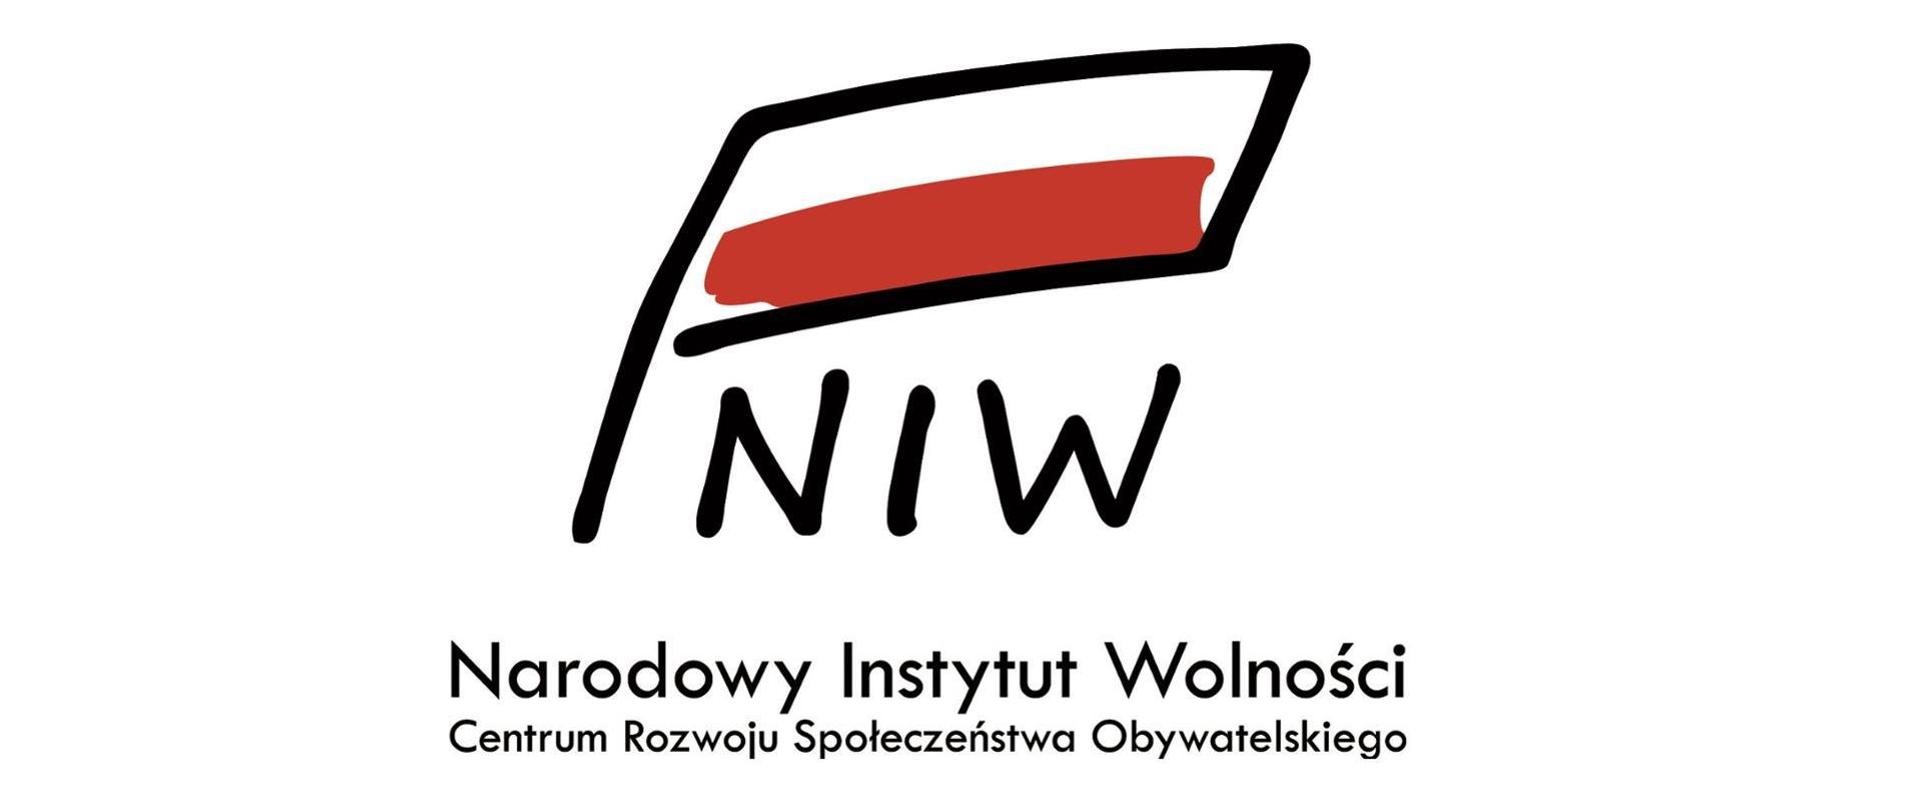 Logotyp - Narodowy Instytut Wolności